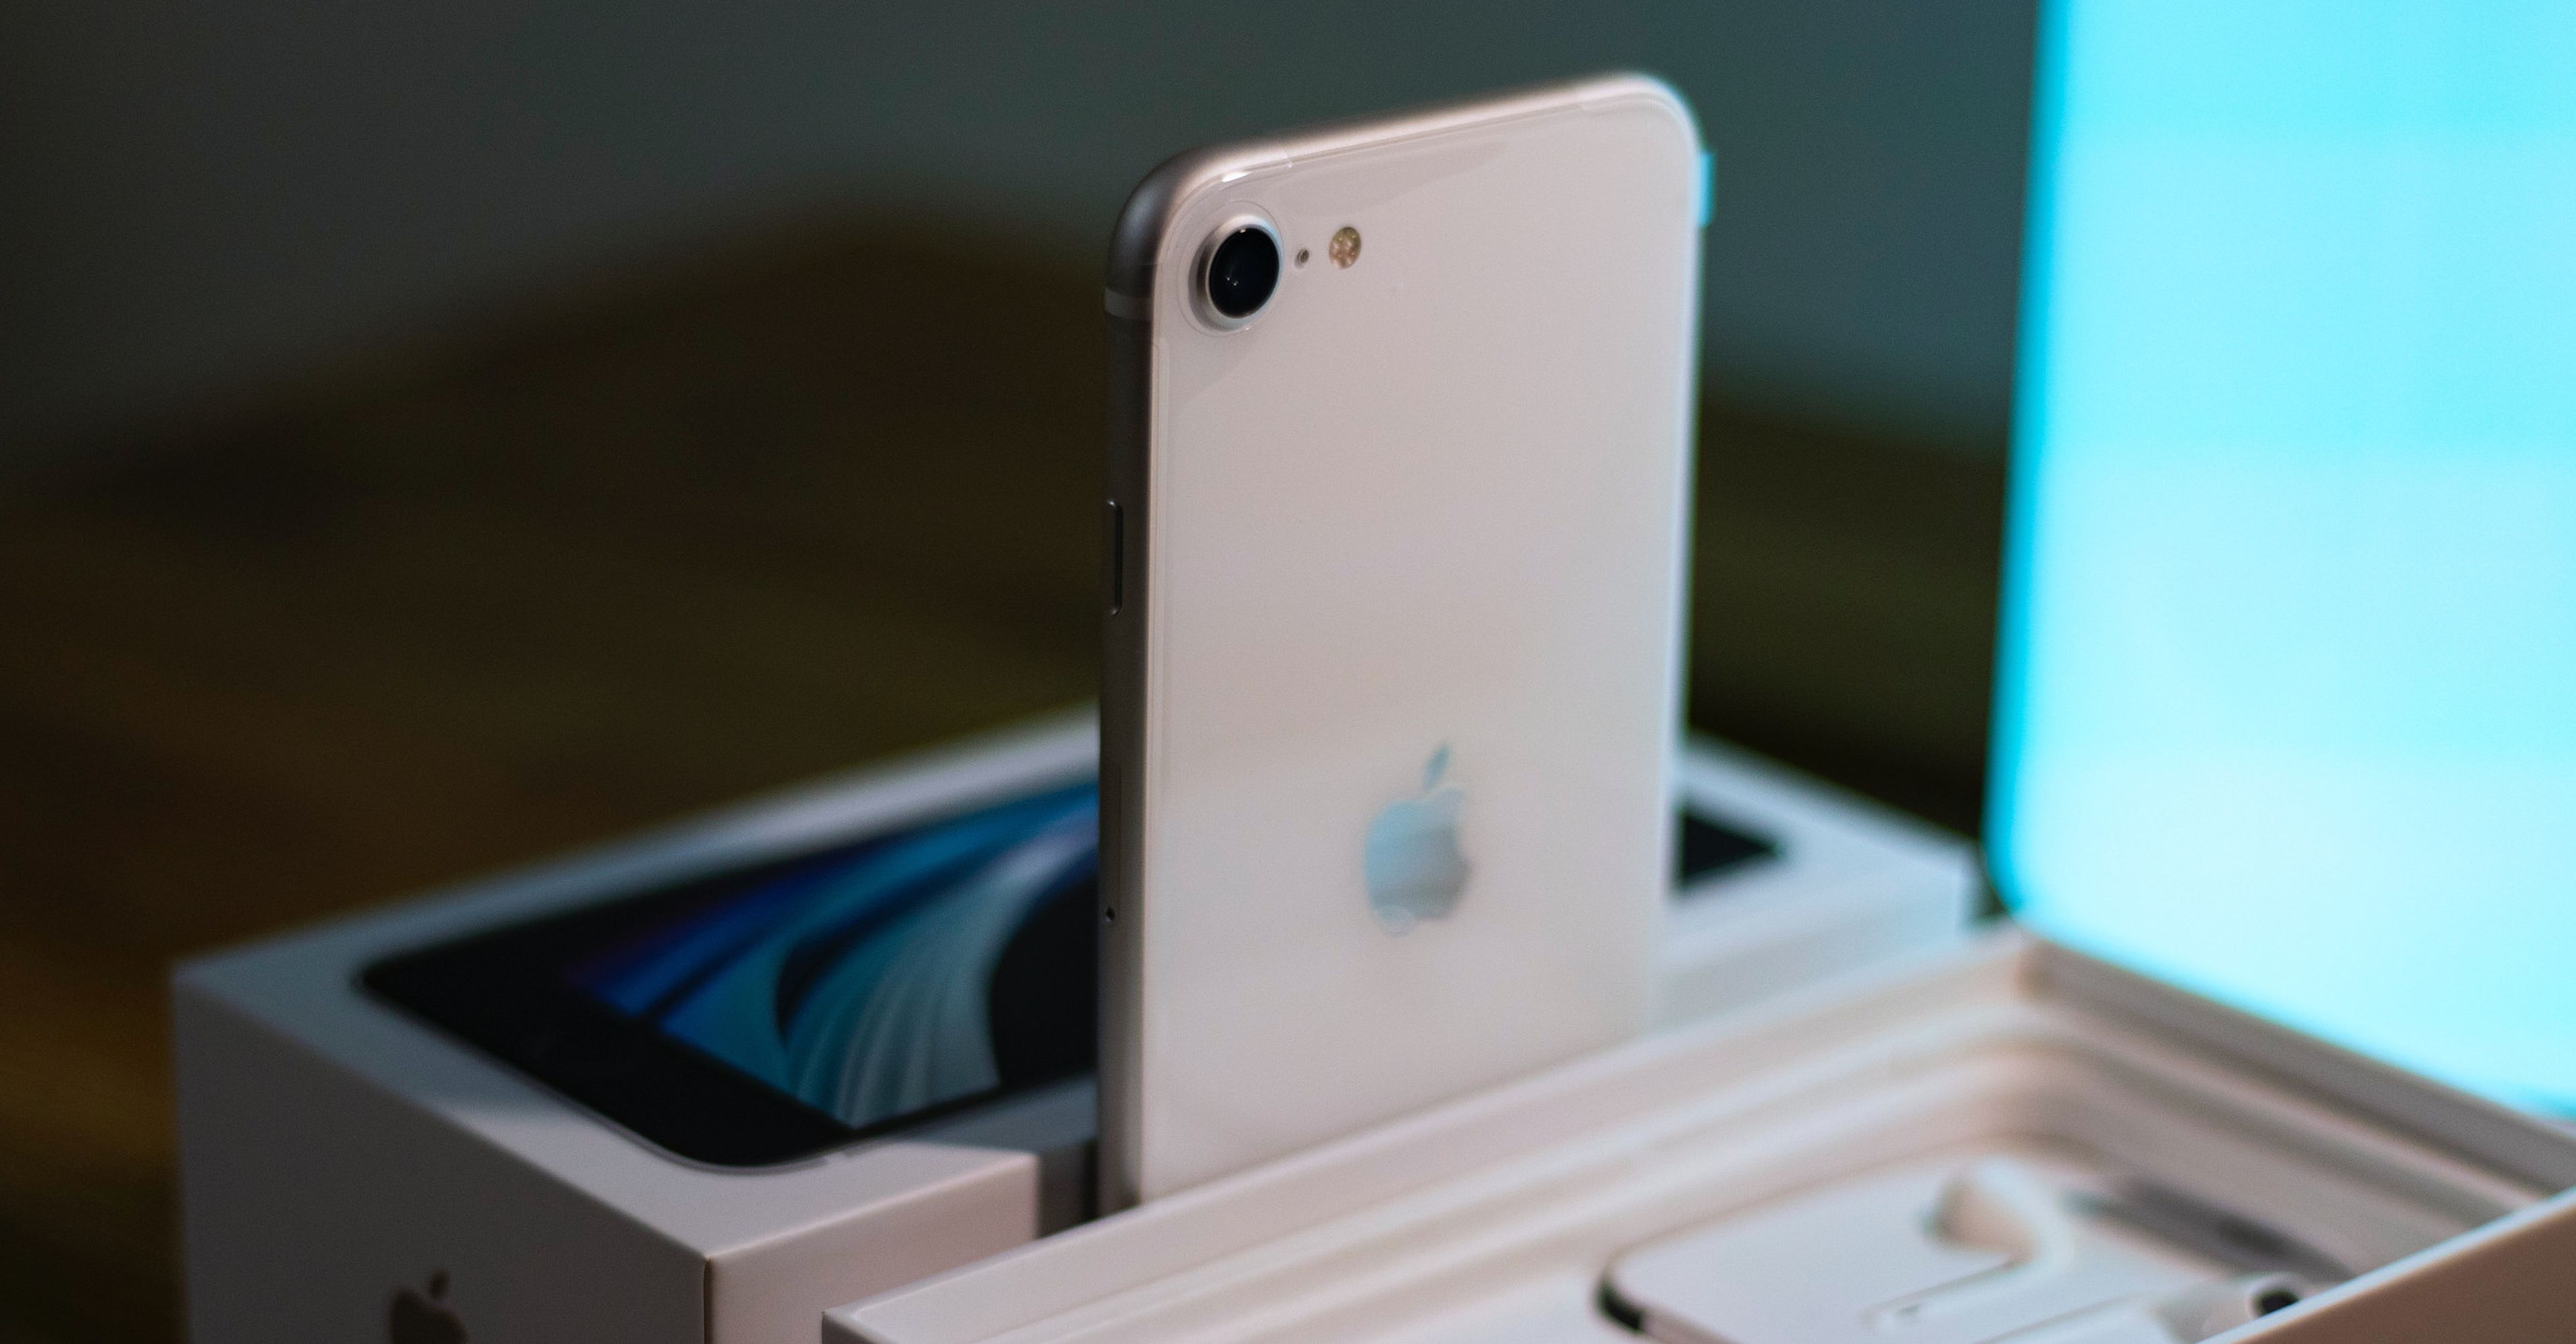 iPhone SE 2020, análisis y opinión del nuevo iPhone barato de Apple